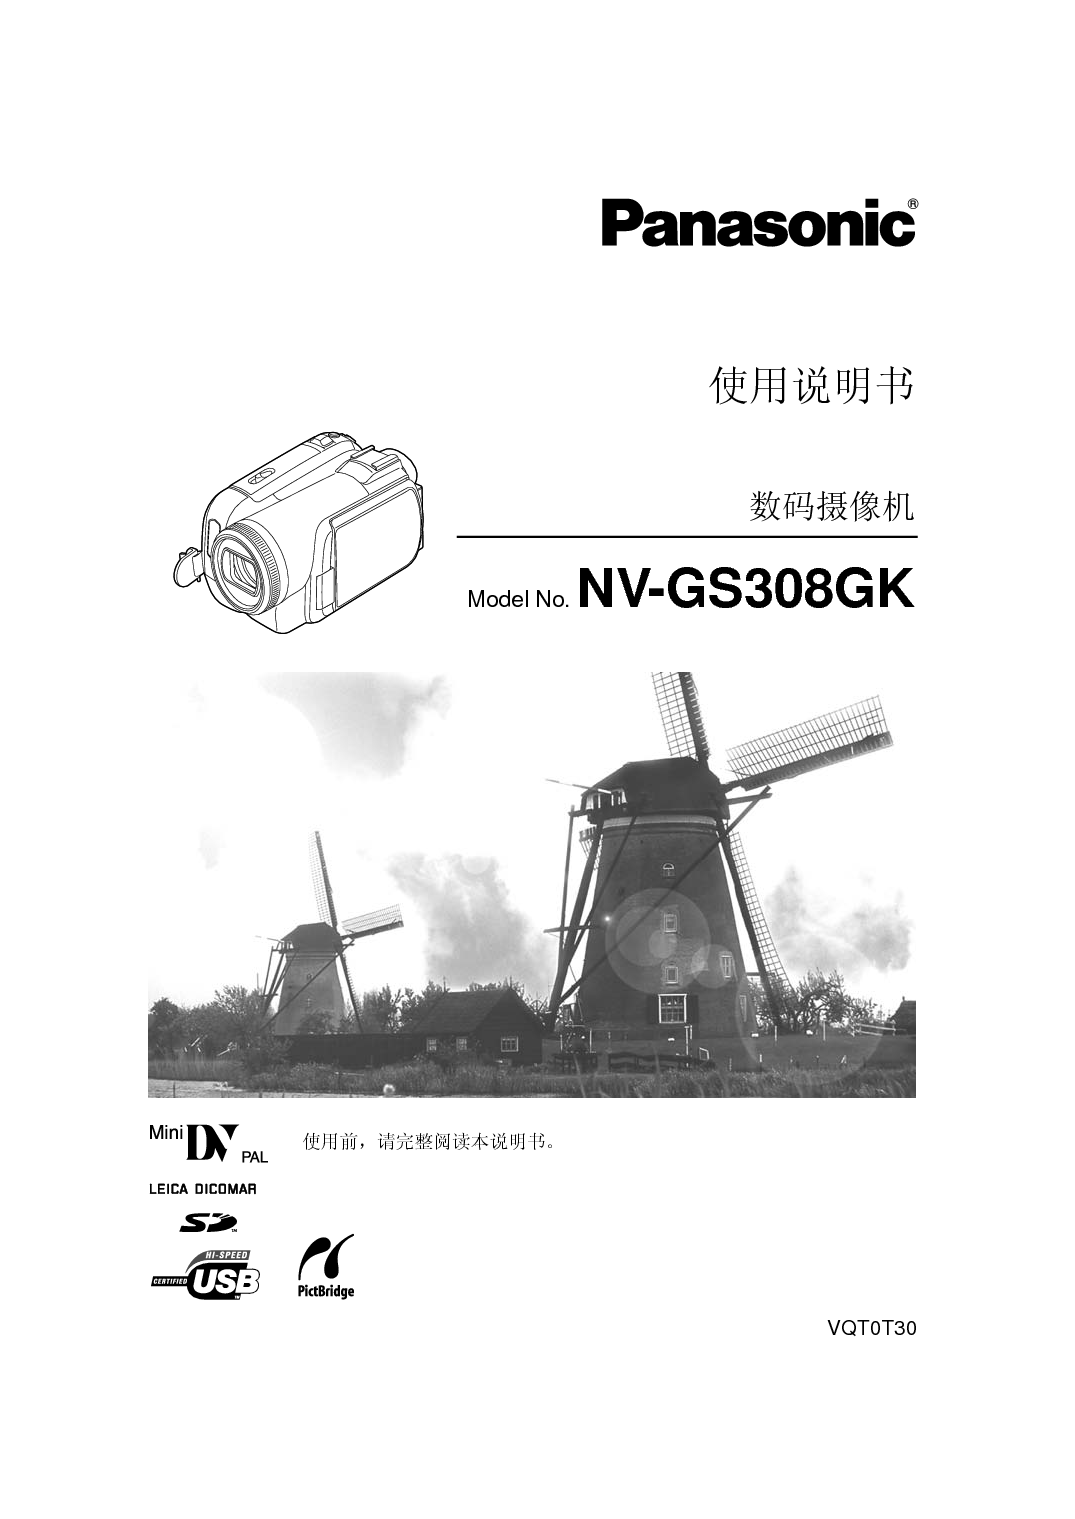 松下 Panasonic NV-GS308GK 说明书 封面